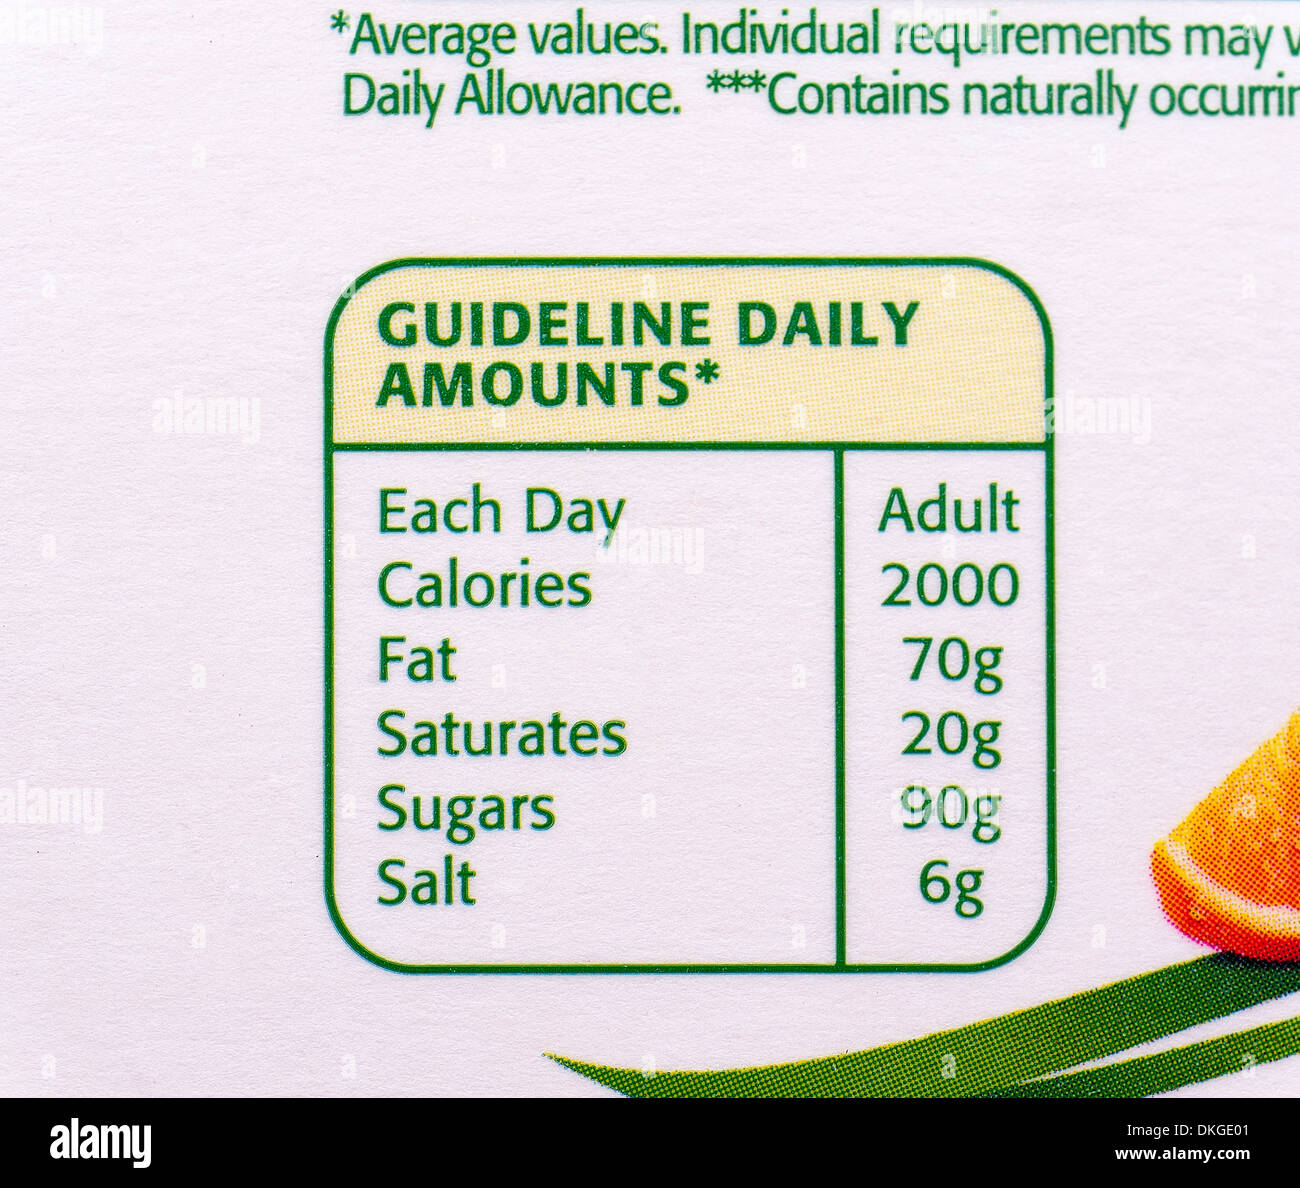 Adulto linee guida giornaliera per calorie,fat,satura,zuccheri,sale come mostrato su un cartone di succo di arancia. Foto Stock